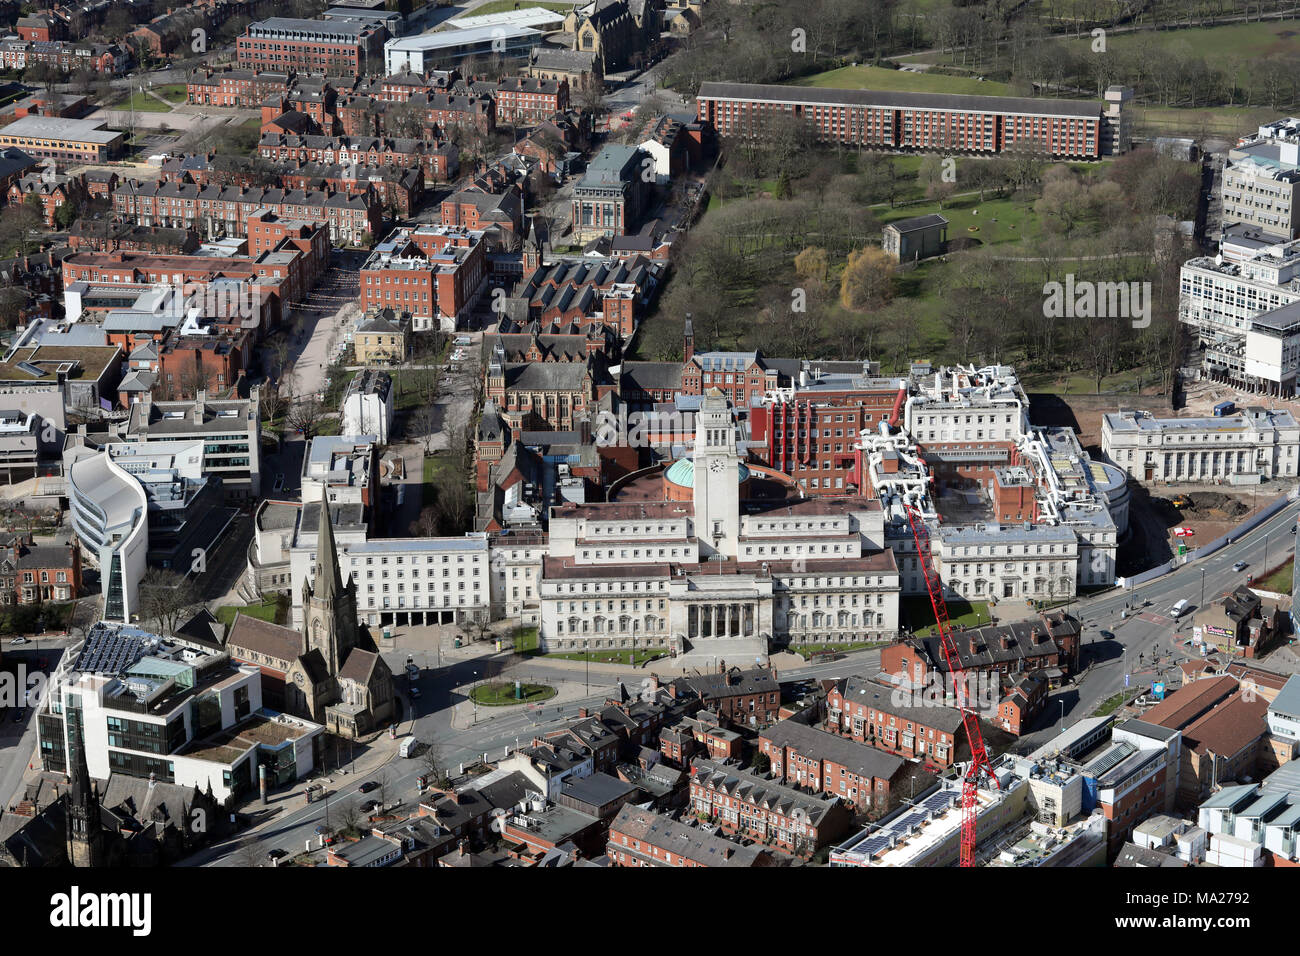 Vue aérienne de l'Université de Leeds avec le bâtiment Parkinson proéminents, UK Banque D'Images